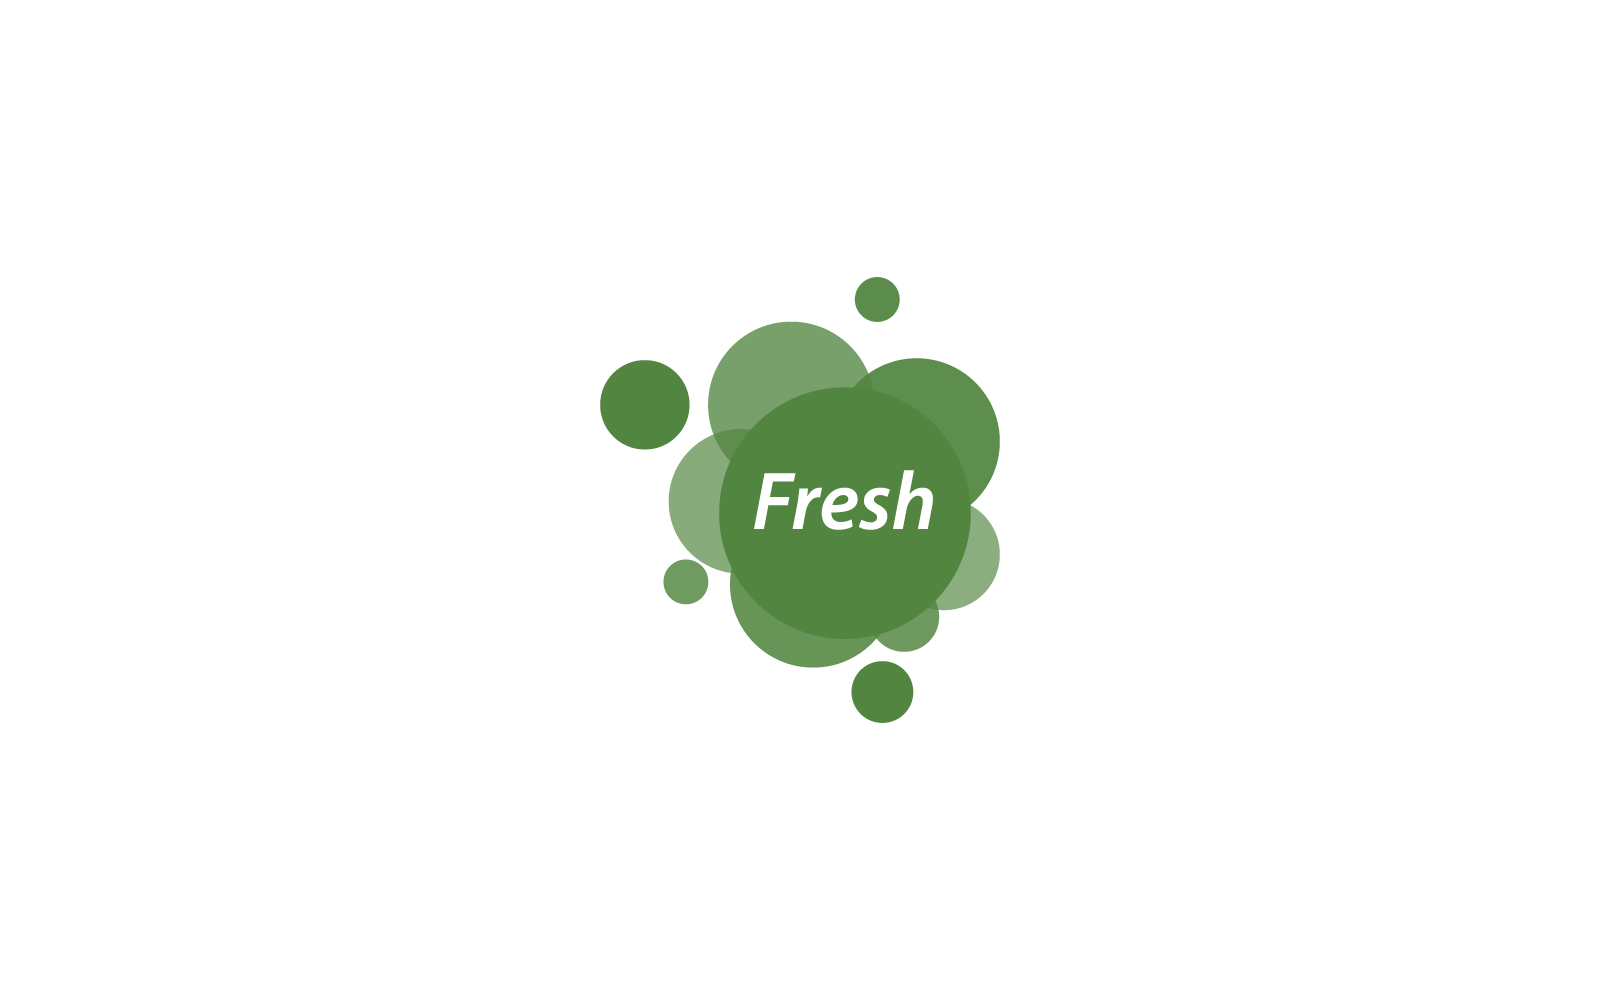 Fresh logo vector design icon template